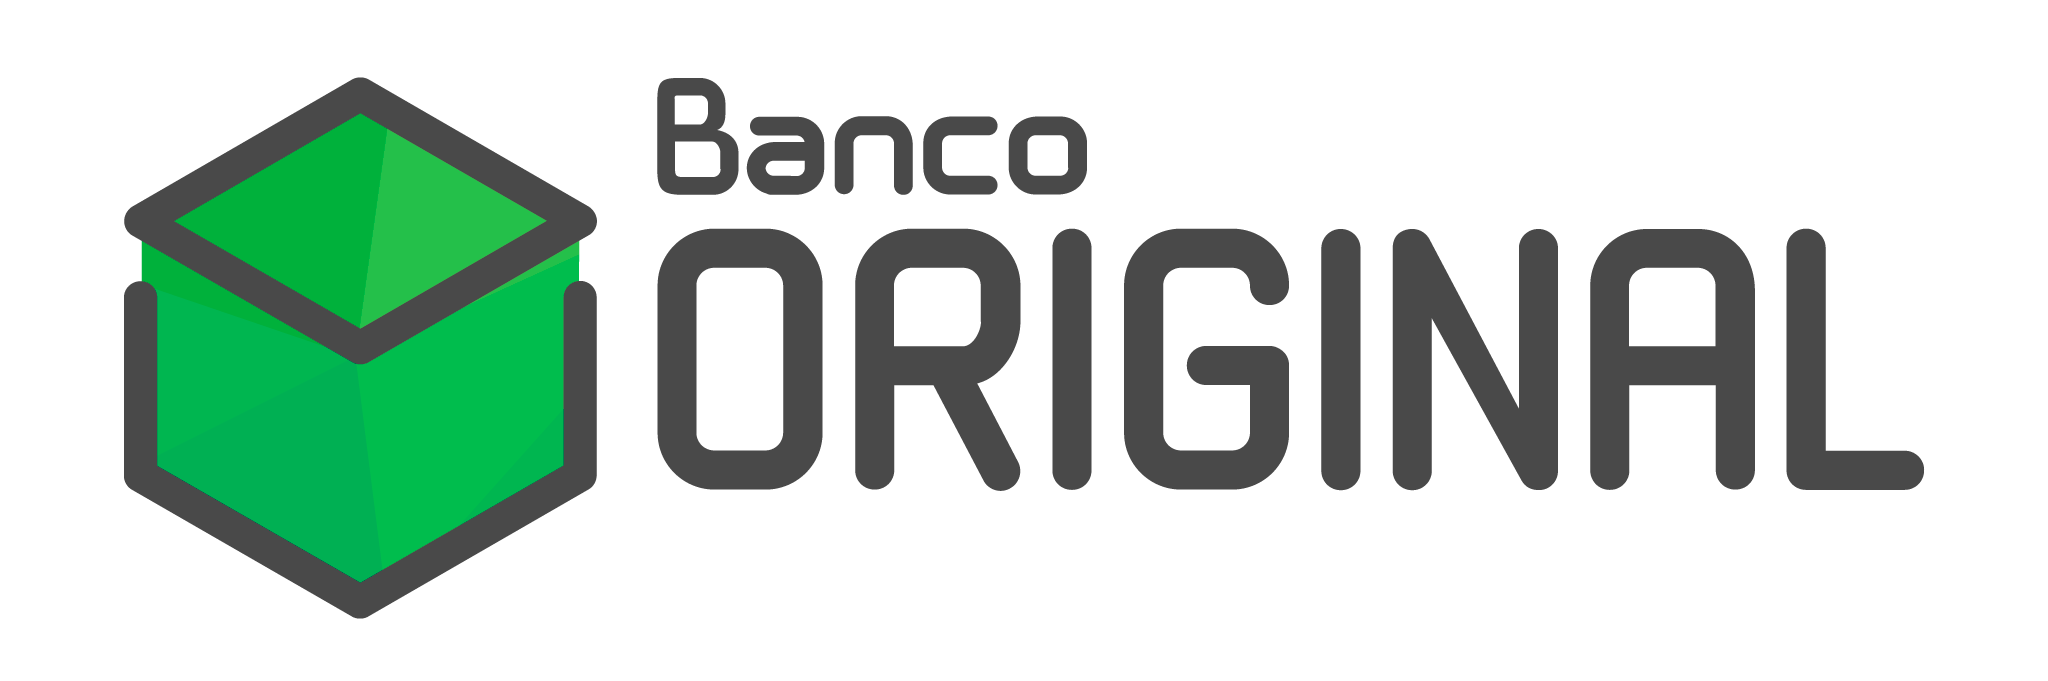 banco_original